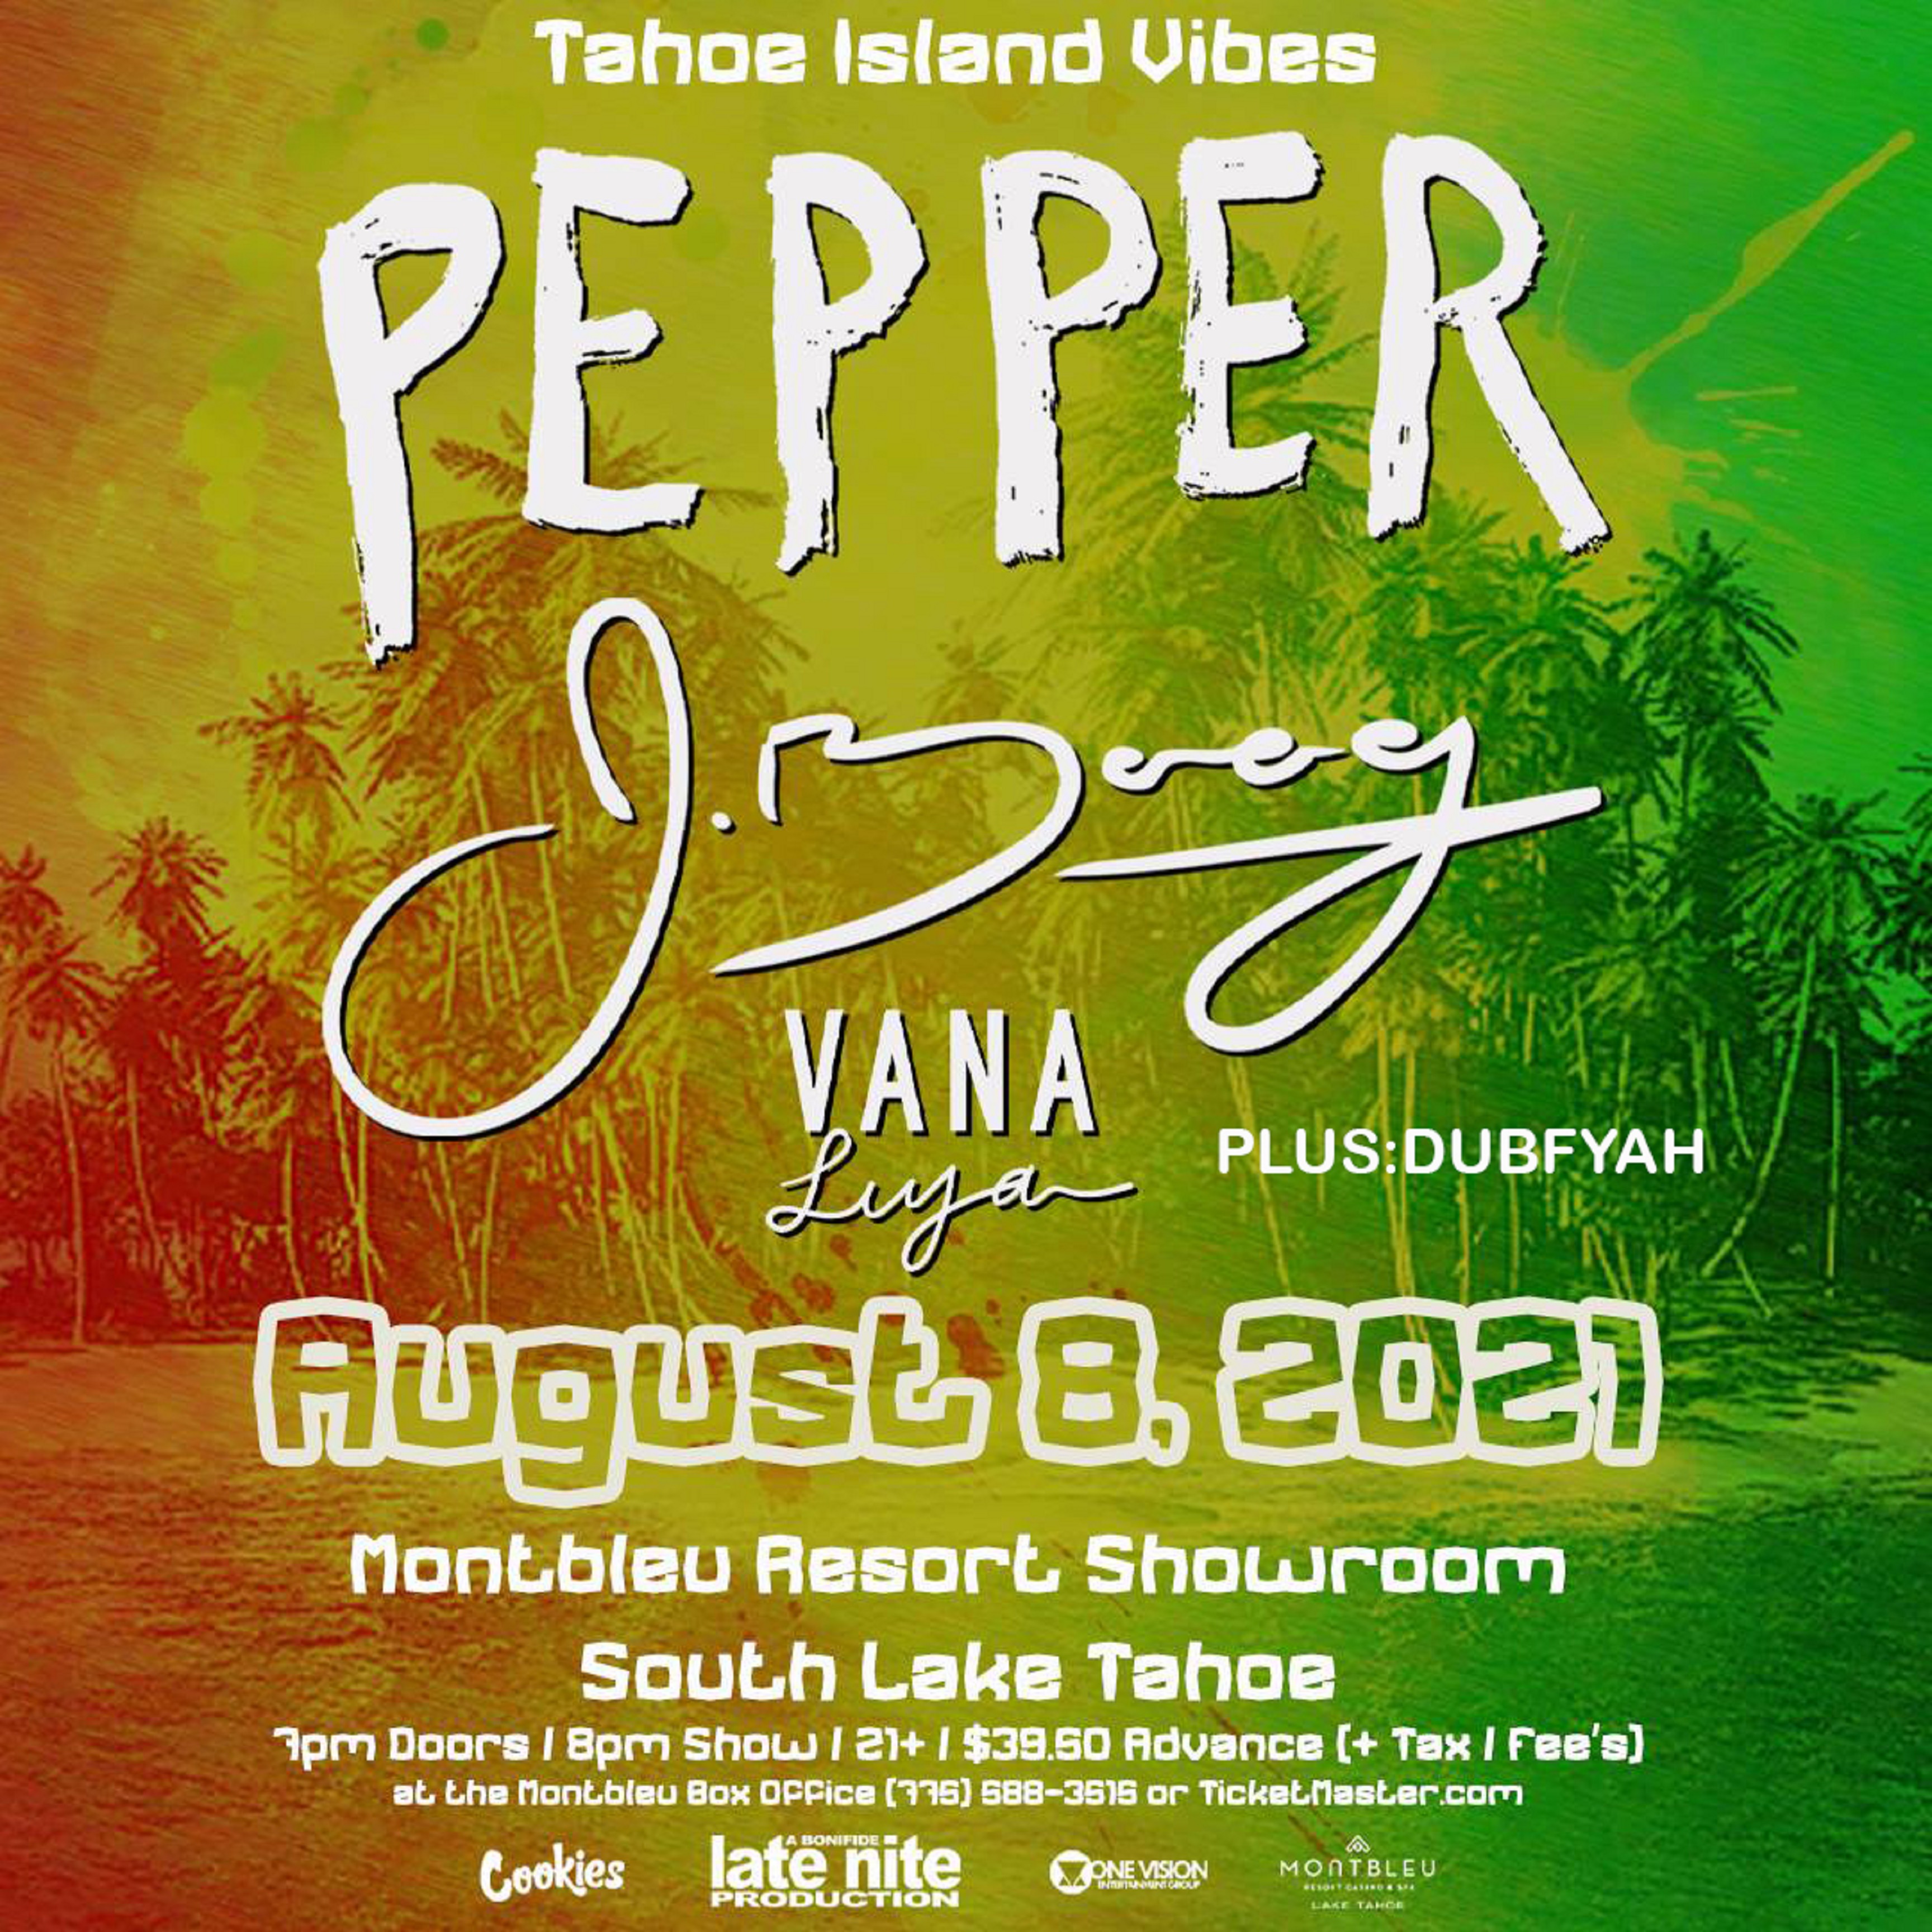 Pepper & J-Boog + Vana Liya to perform in South Lake Tahoe